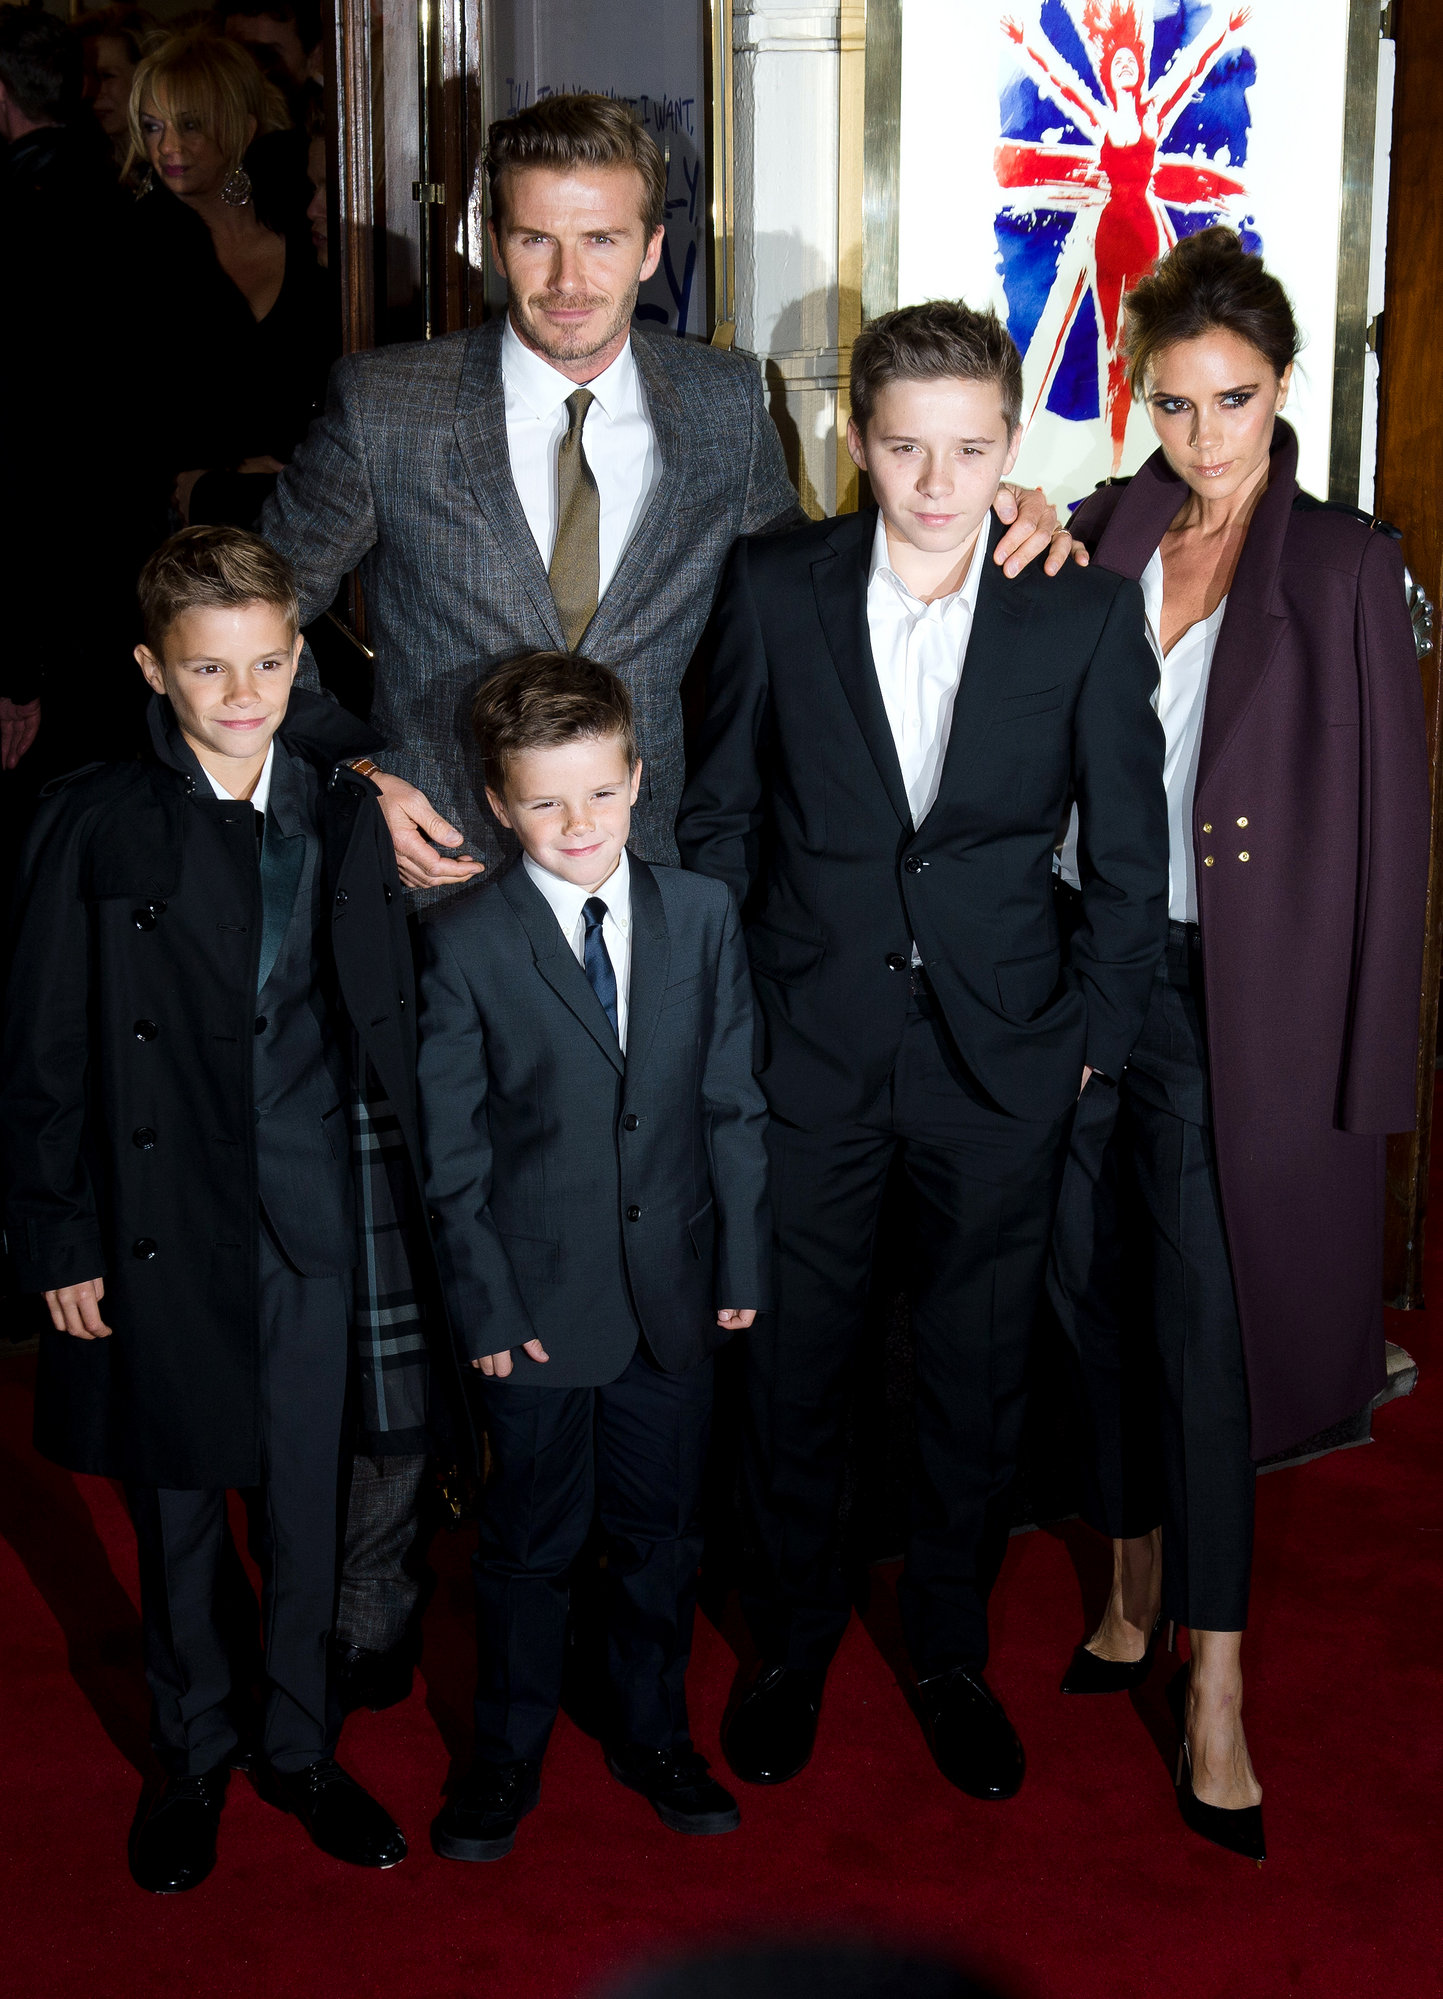 Victoria y sus chicos Beckham, unidos, felices…y muy fashion